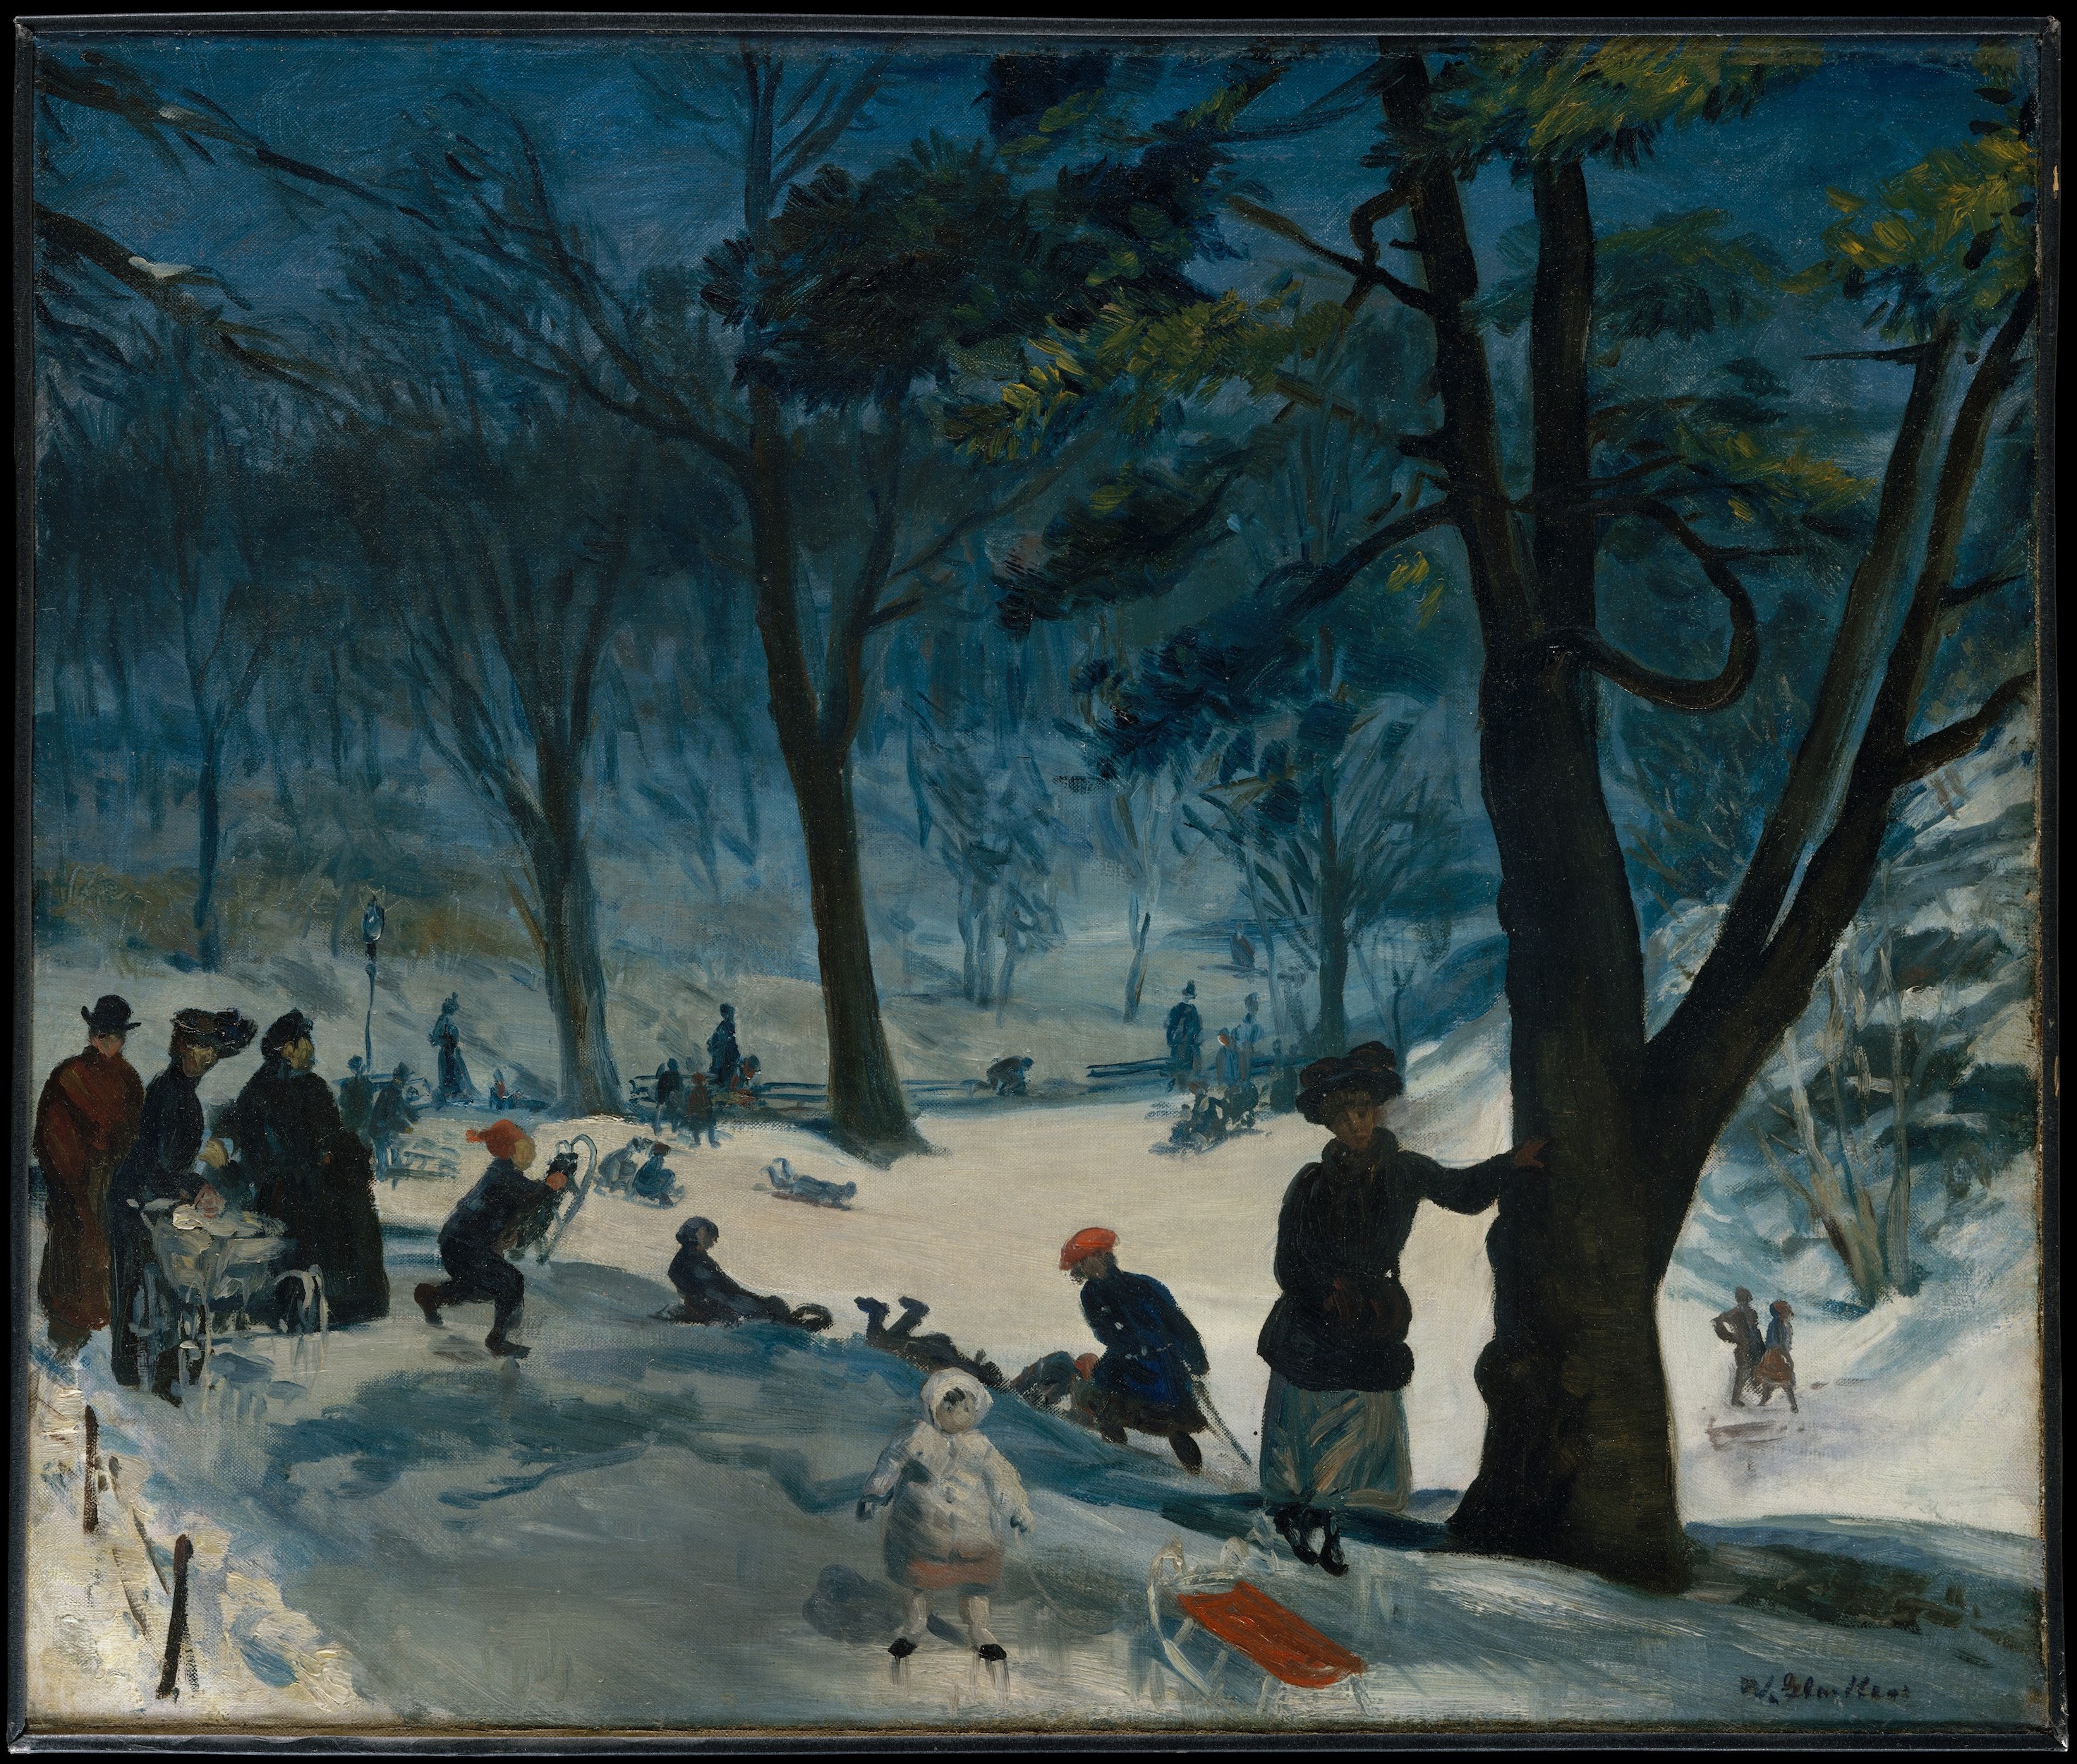 冬天的中央公园 by 威廉 格拉肯斯 - 约1905年 - 63.5 x 76.2 厘米 